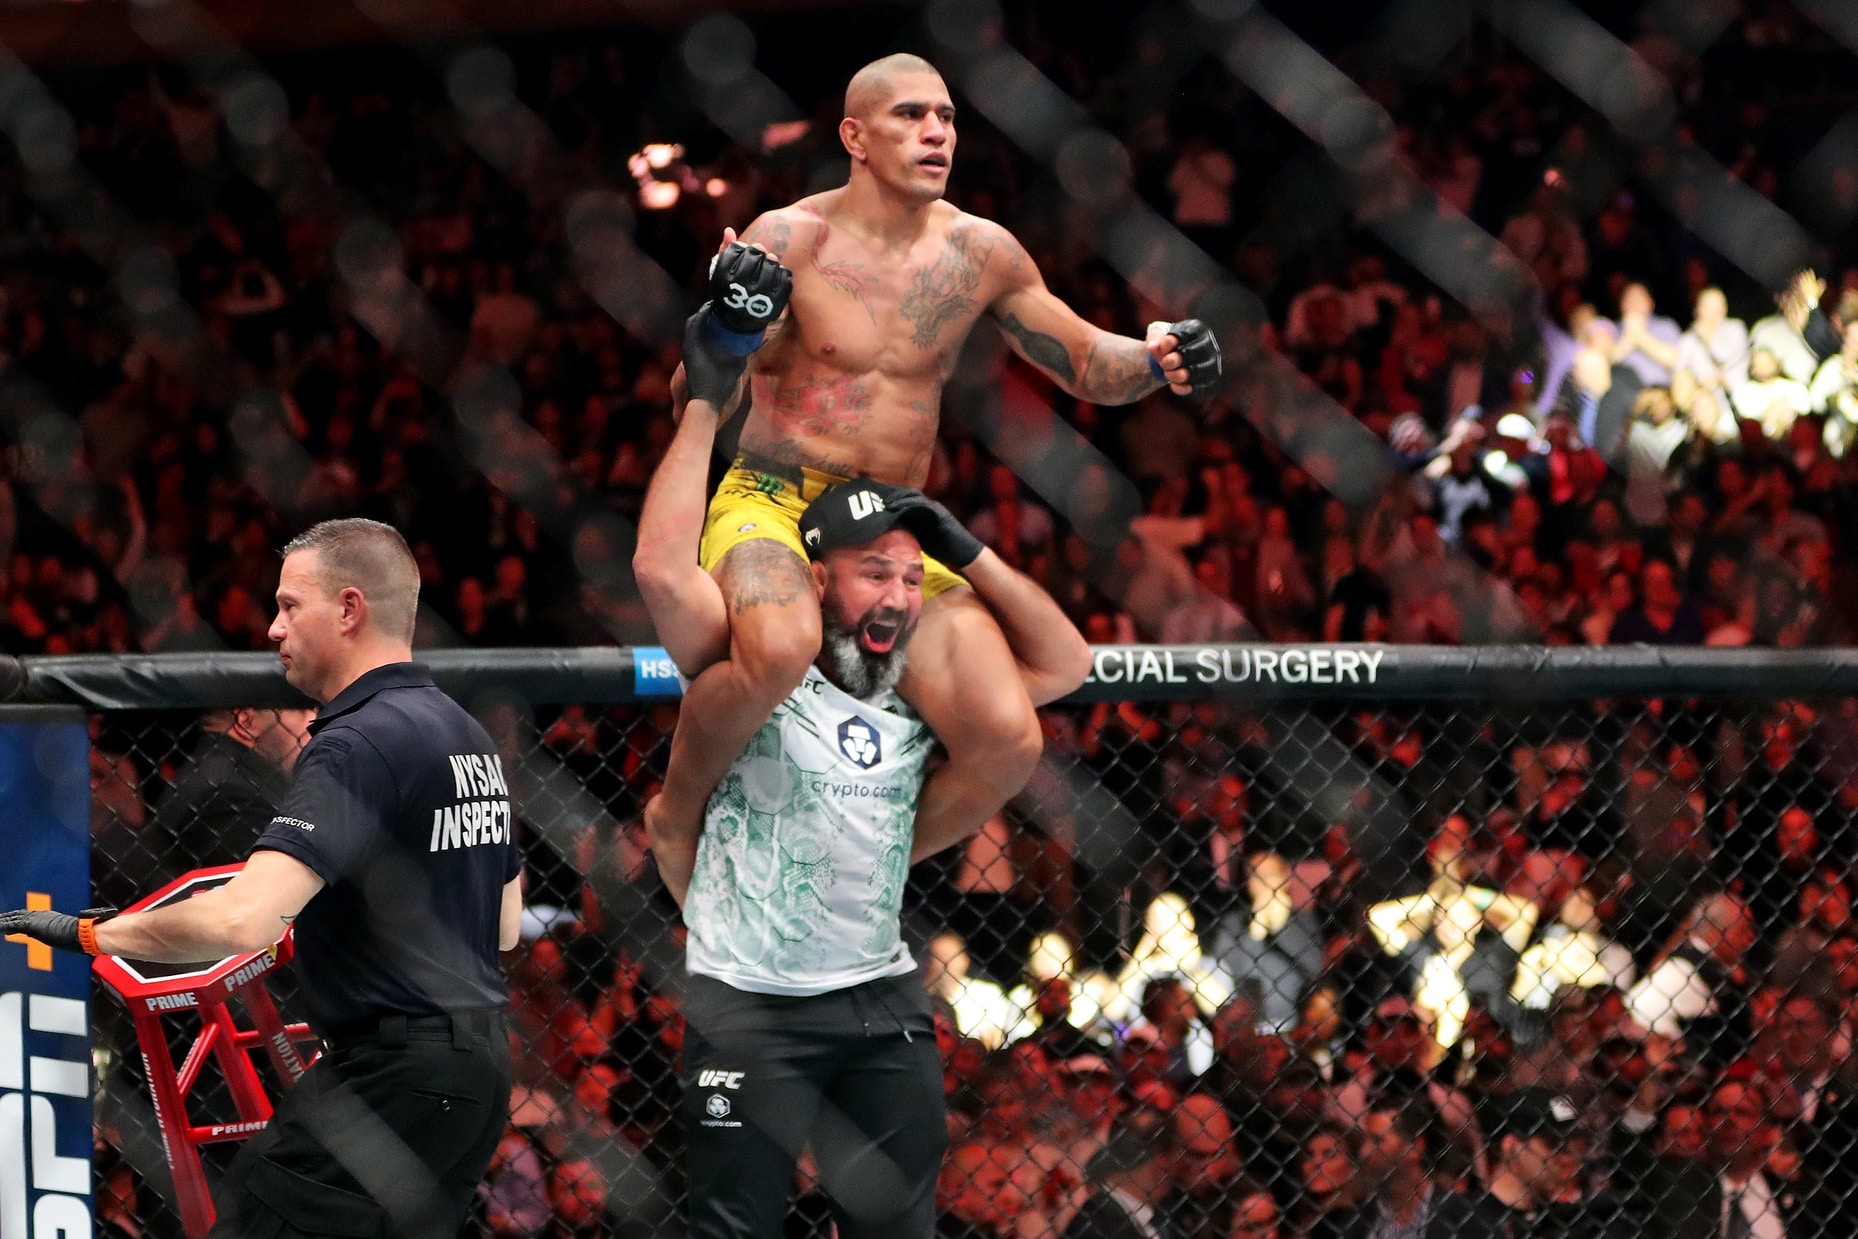 MMA: UFC 295 – Prochazka vs Pereira